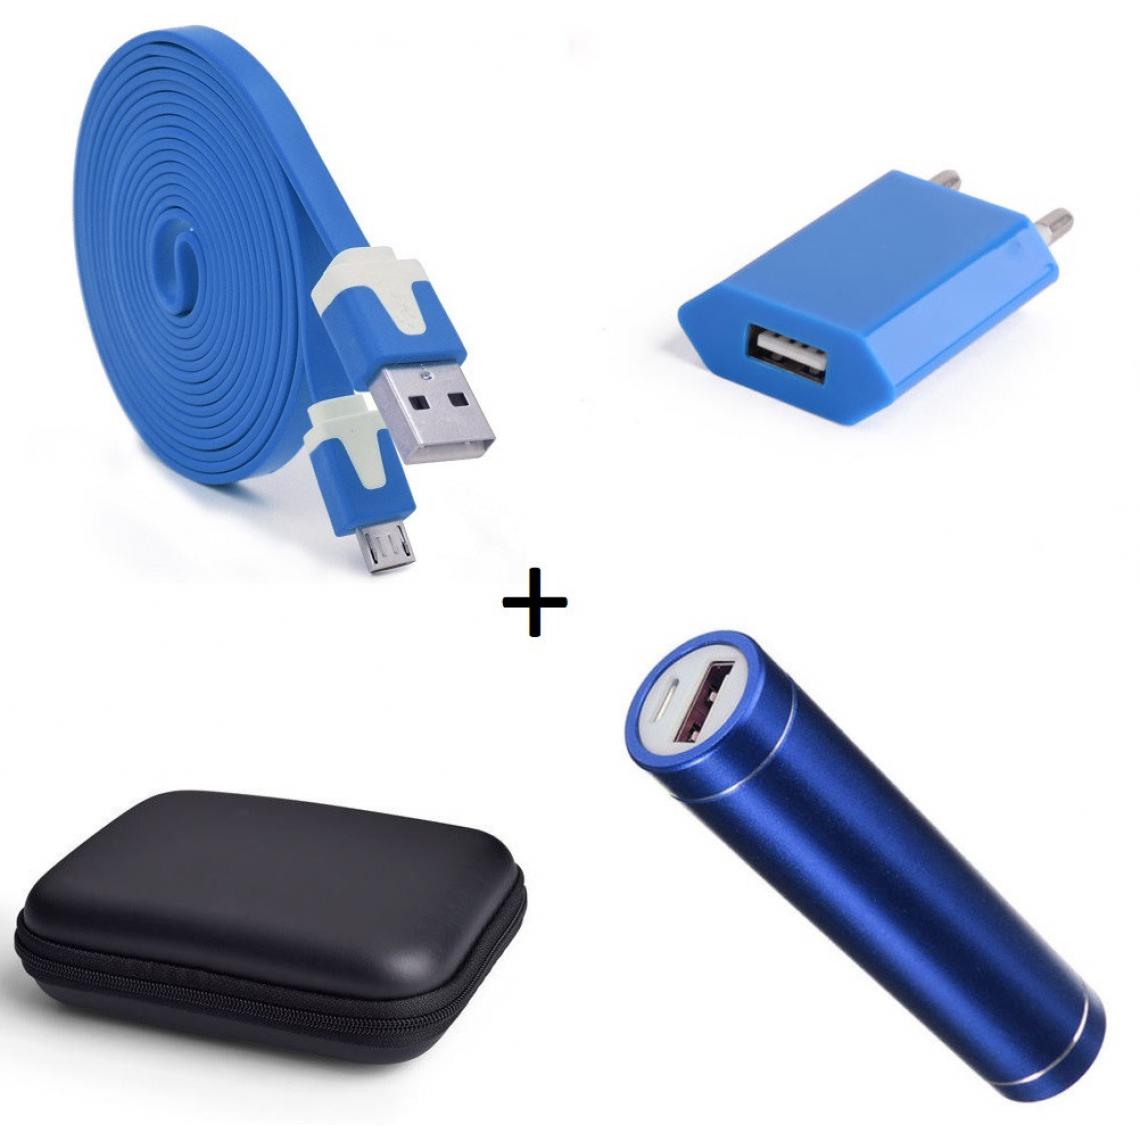 Shot - Pack pour XIAOMI Redmi S2 (Cable Chargeur Noodle Micro USB + Pochette + Batterie + Prise Secteur) Android (BLEU) - Chargeur secteur téléphone